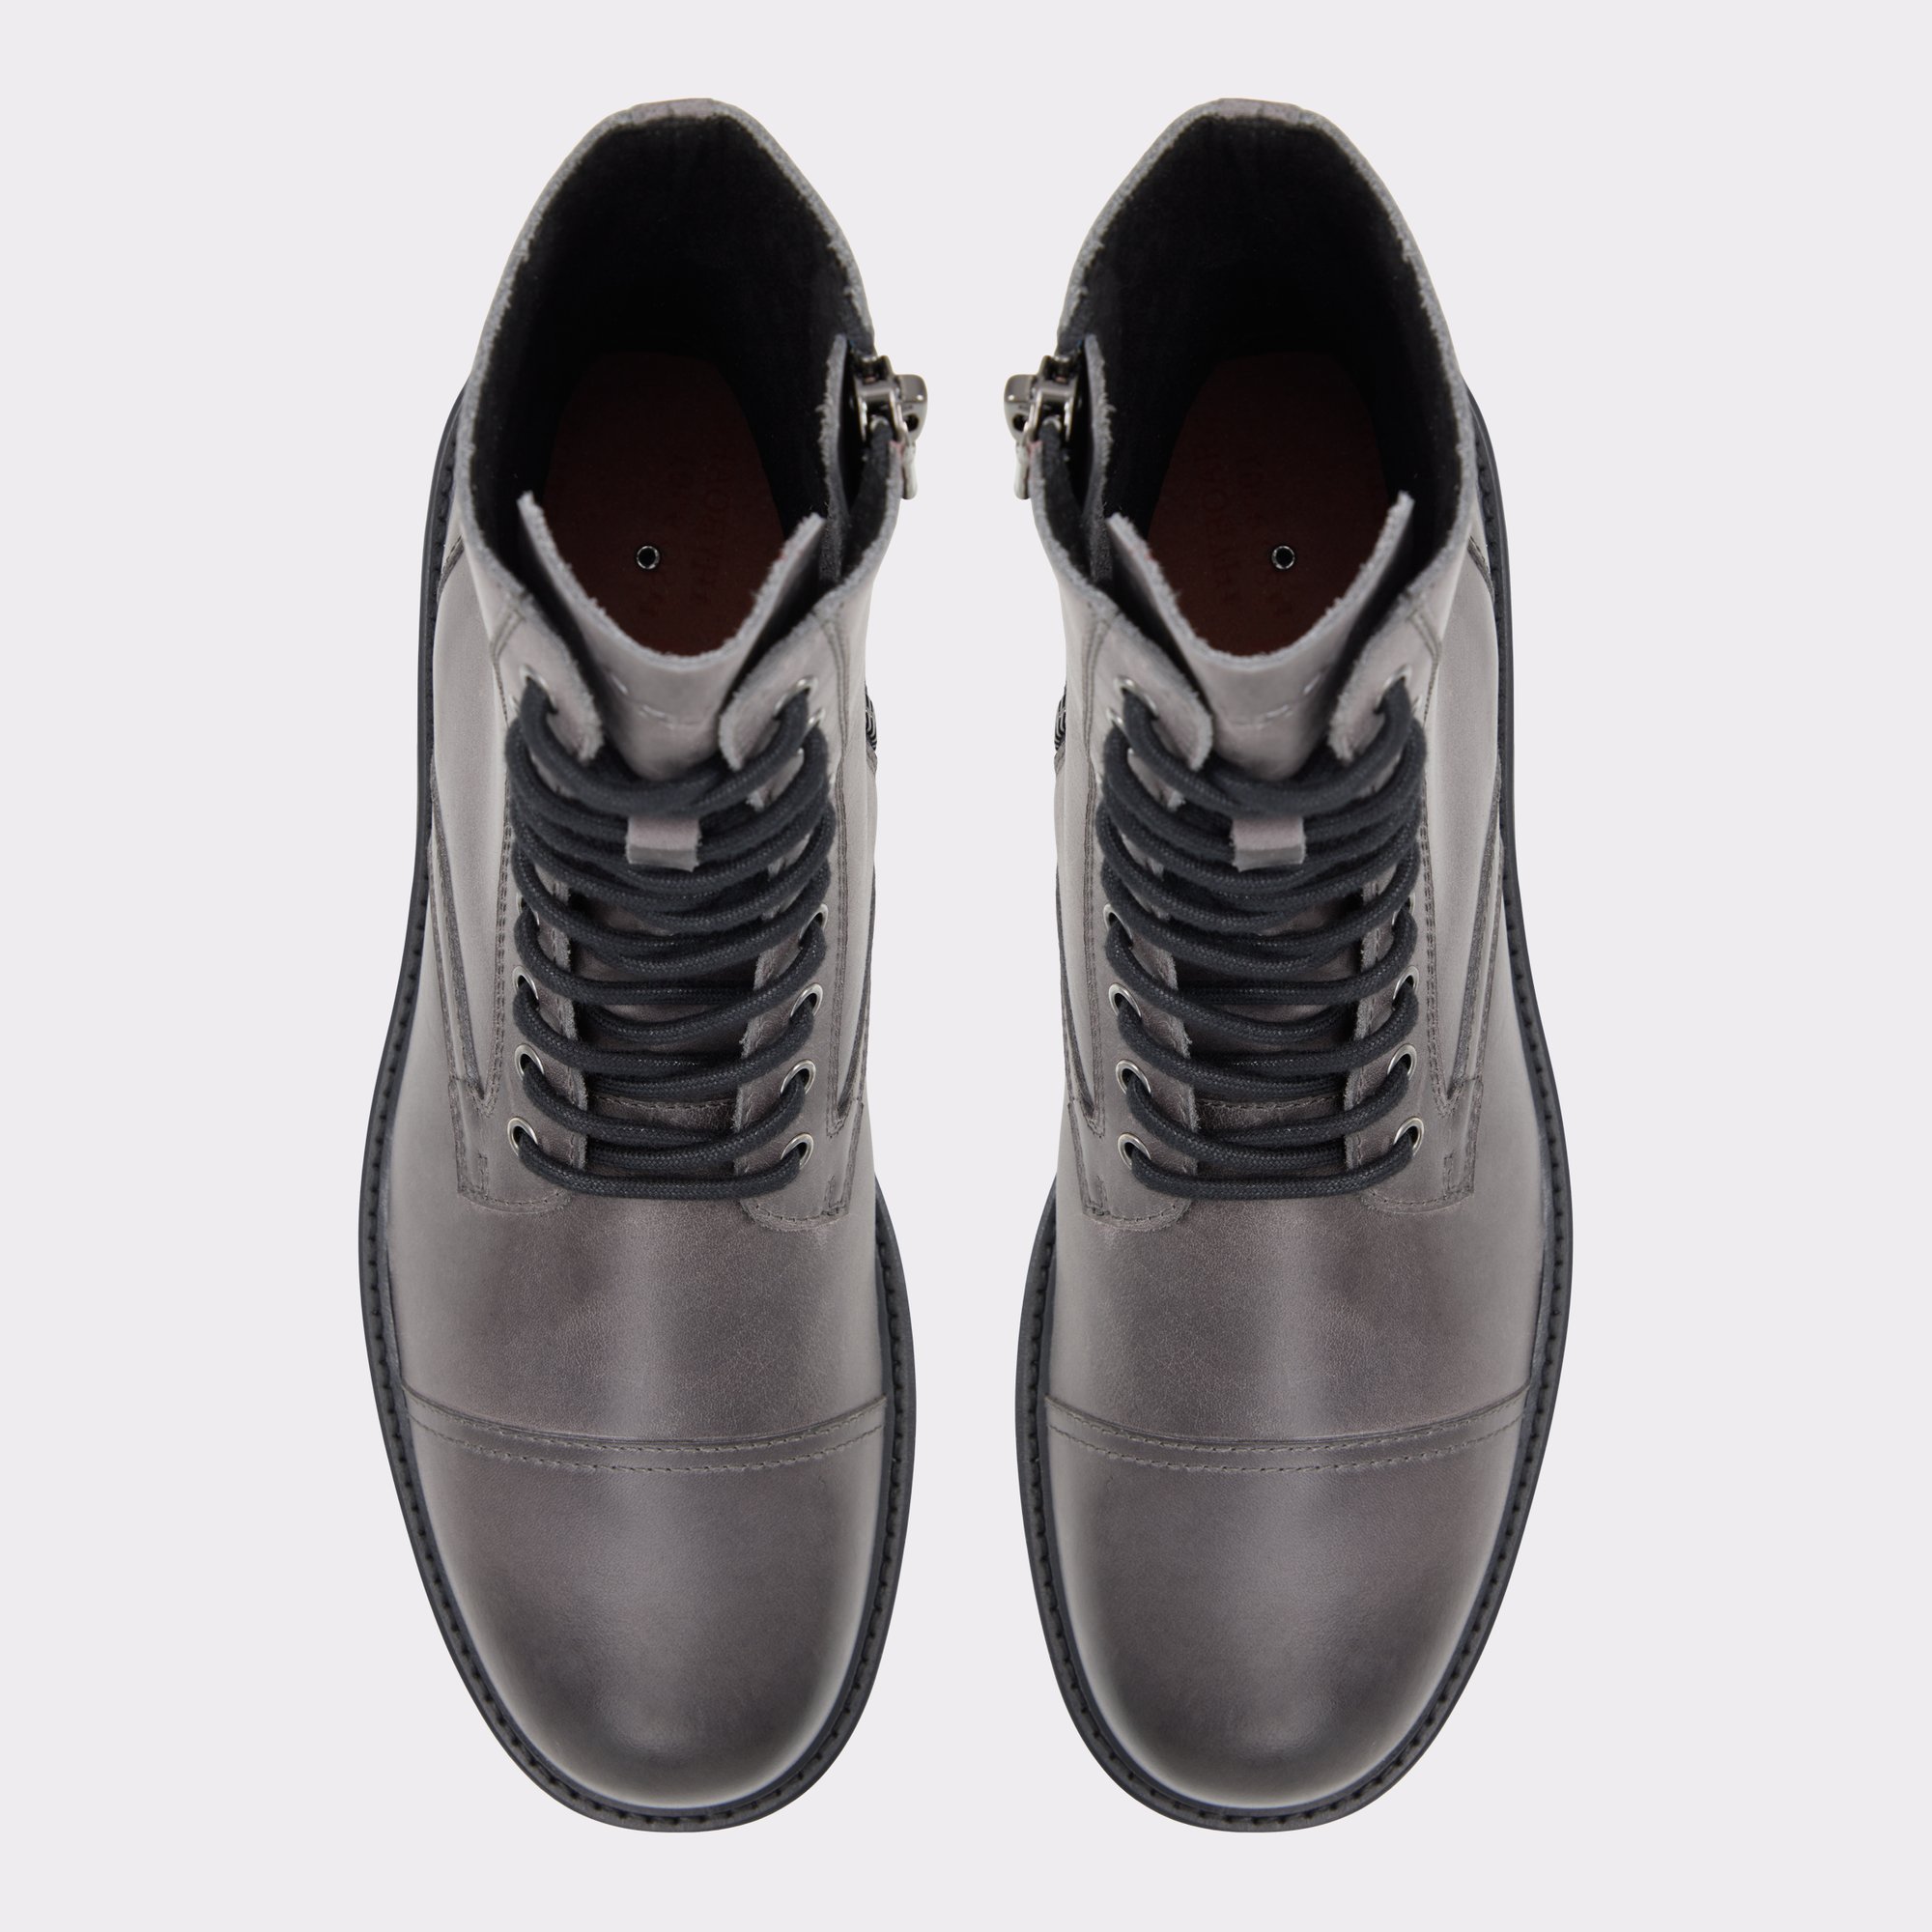 Northfield Dark Grey Men's Casual boots | ALDO Canada